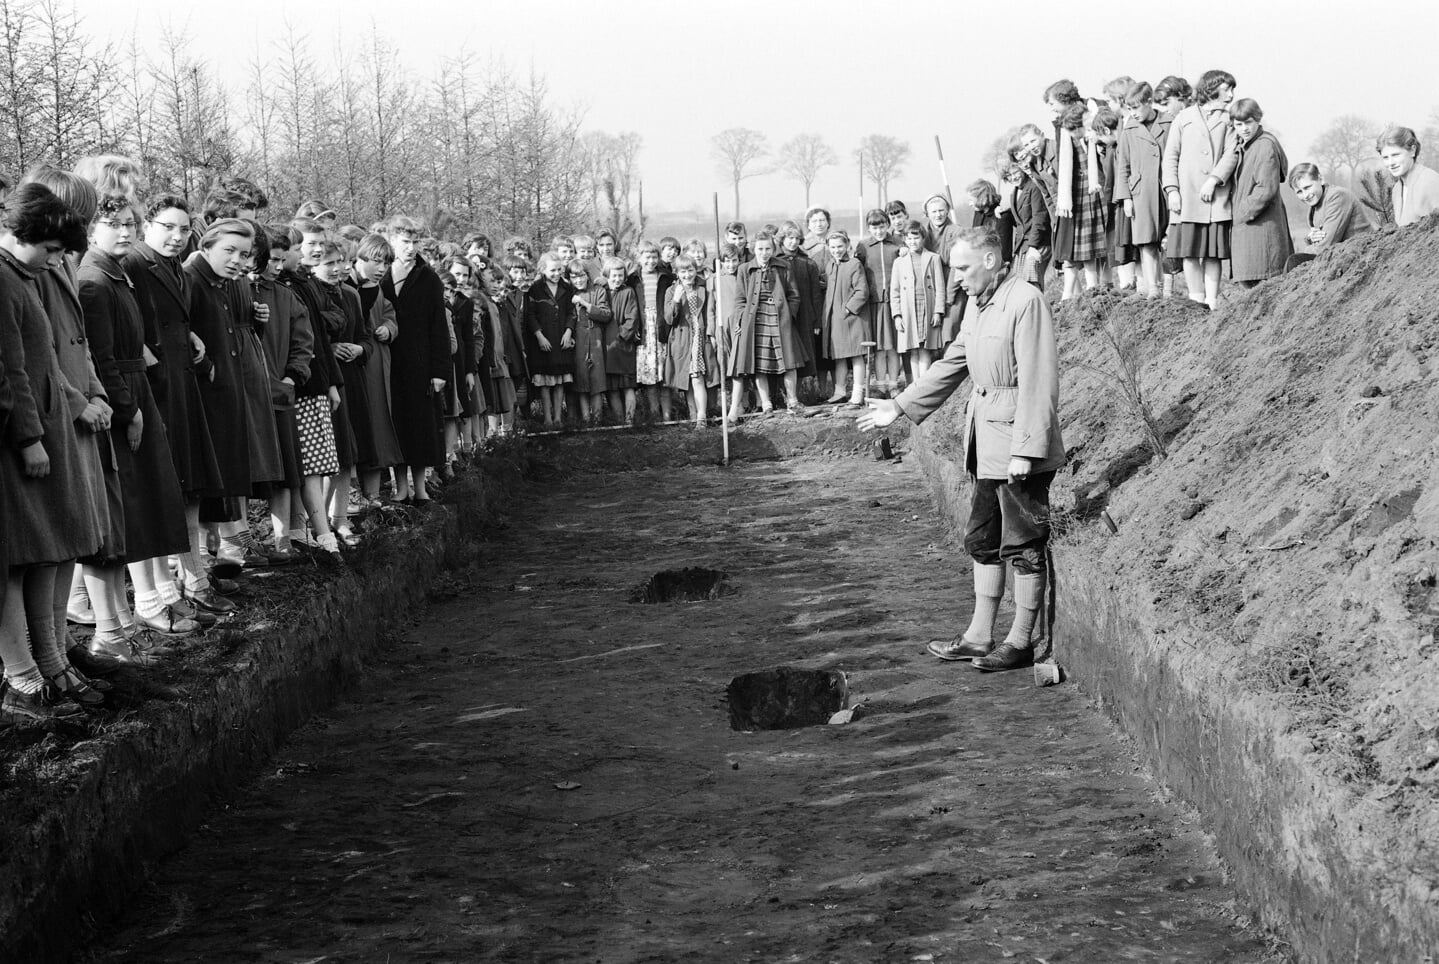 Al jarenlang graven archeologen in Oss op, zoals hier in 1956. Prof. Modderman, die aan de wieg staat van het onderzoek in Oss, geeft uitleg aan schoolkinderen.